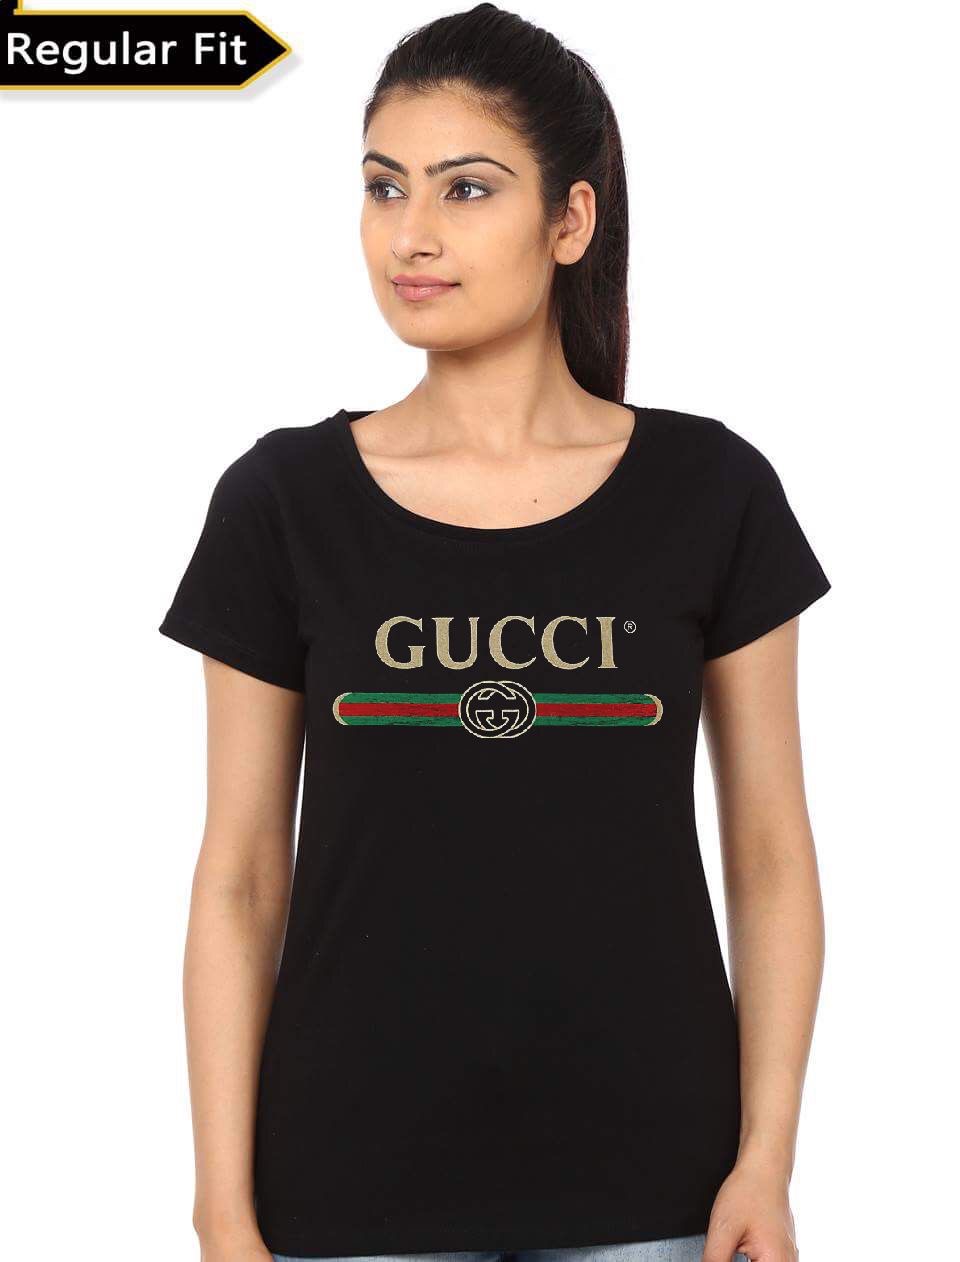 Gucci Women's T-Shirt